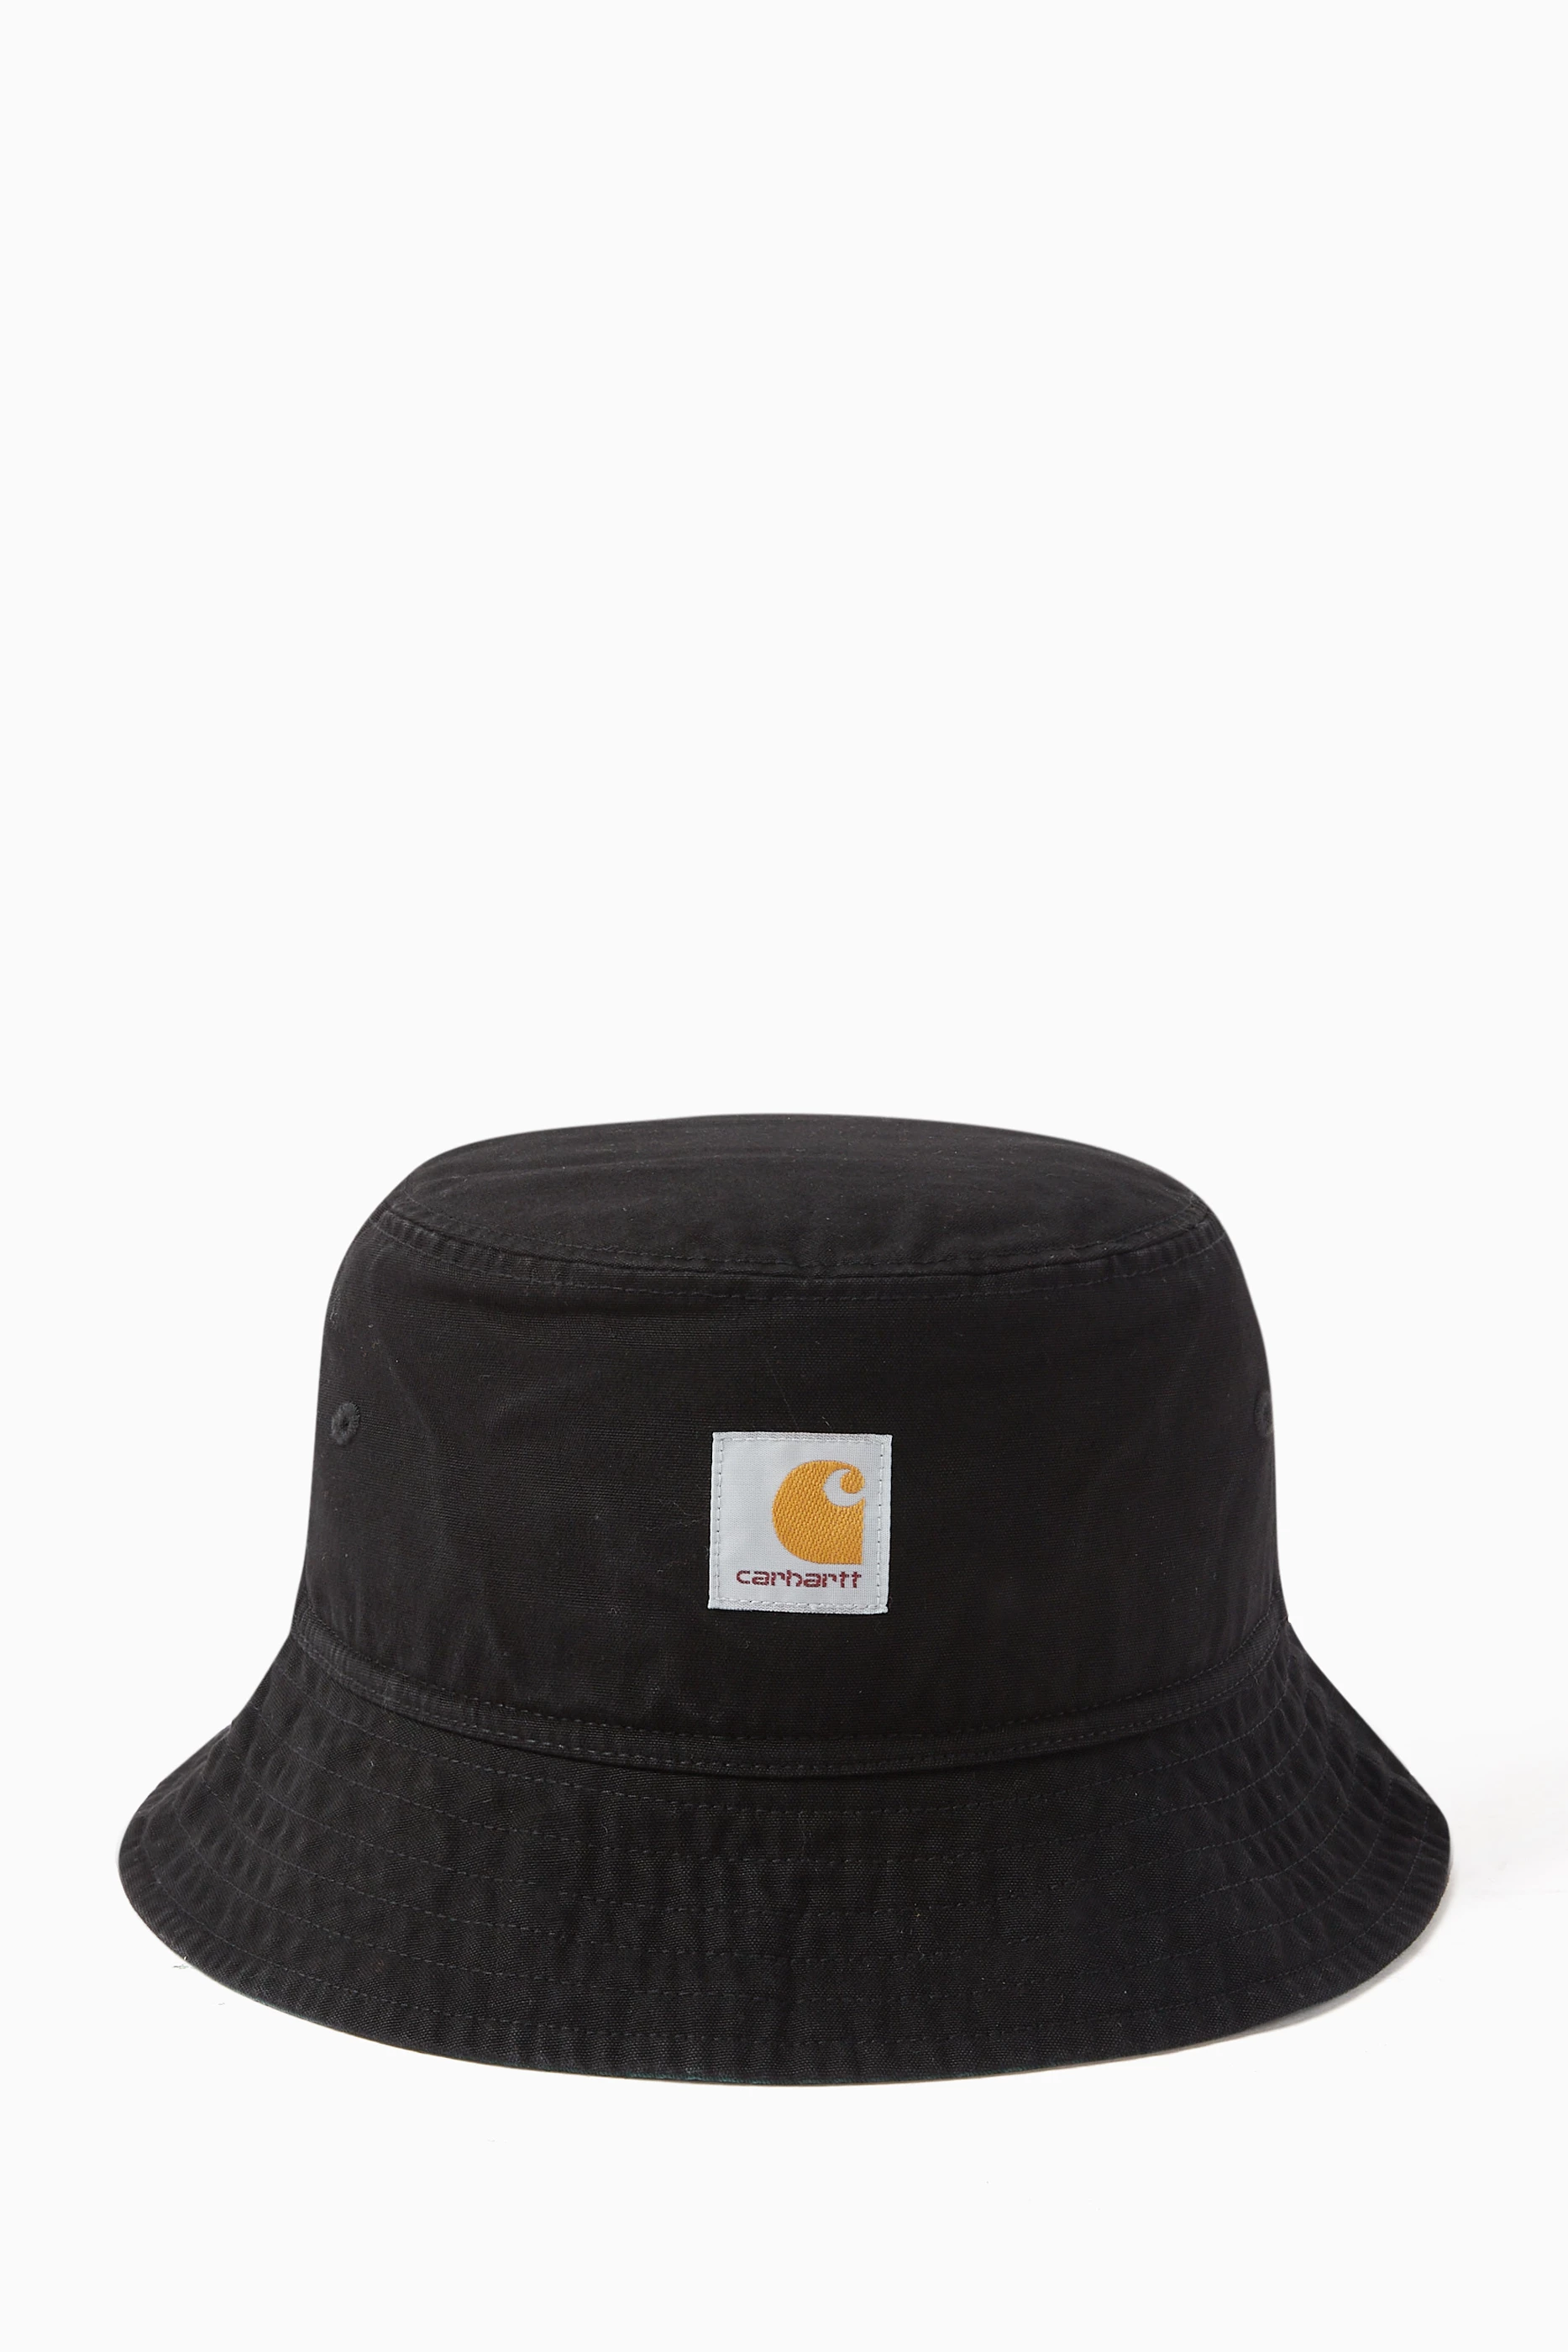 Buy Carhartt WIP Black Terrell Bucket Hat in Cotton Twill Online for Men